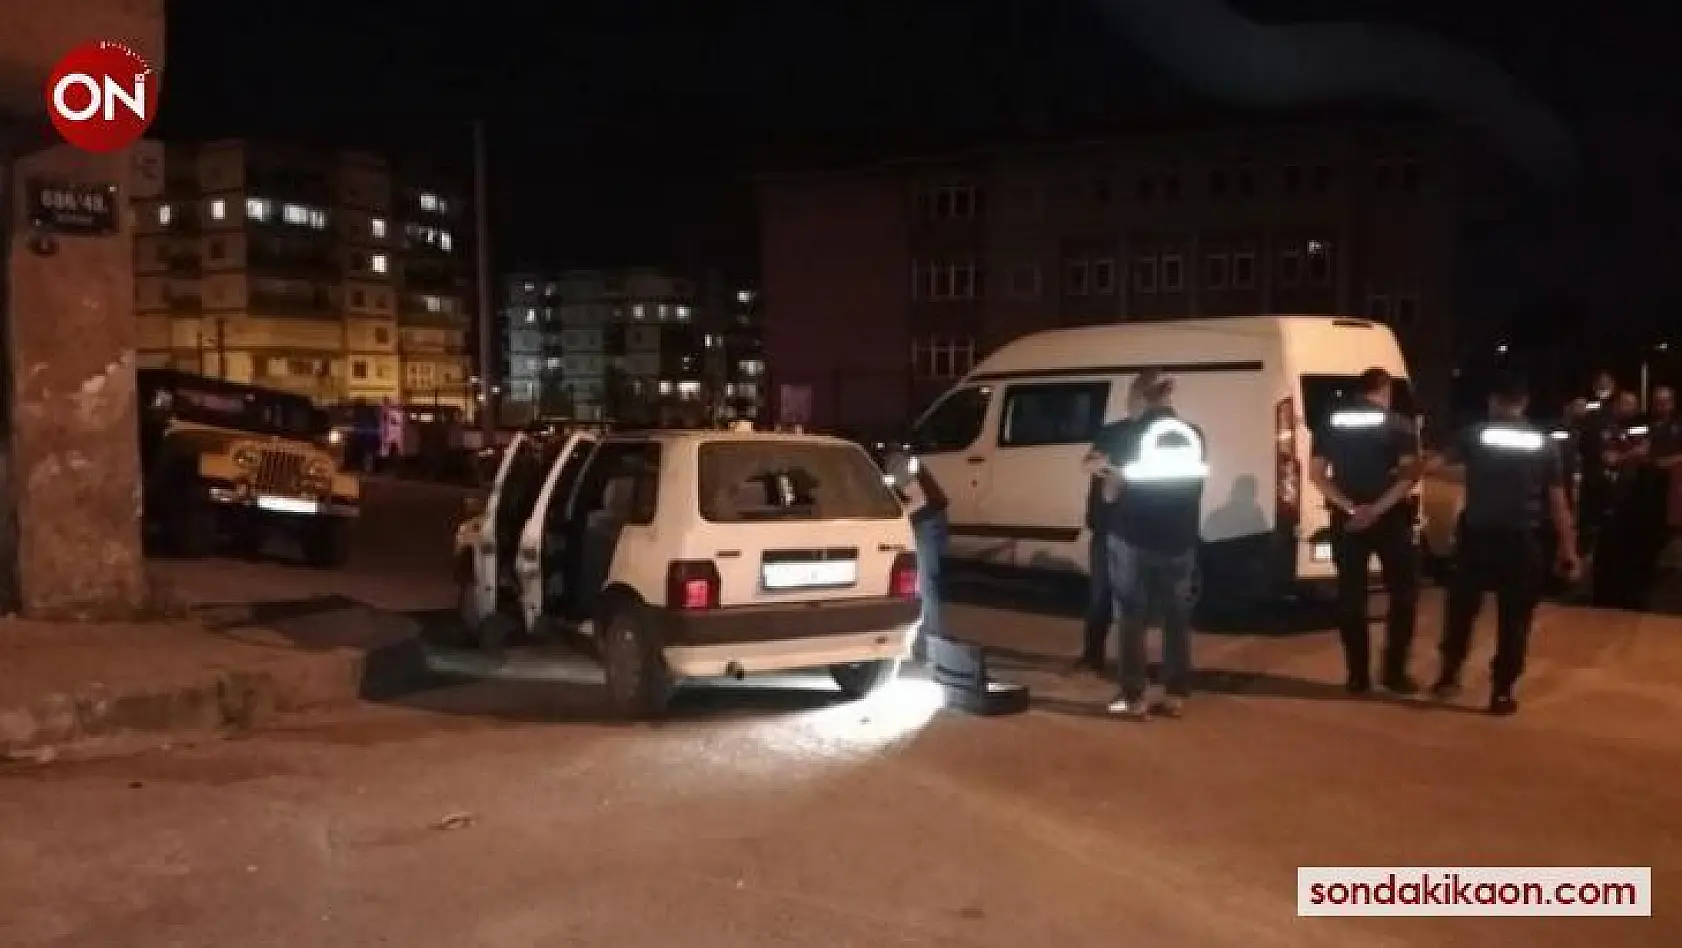 İzmir'de 1 kişinin öldüğü cinayete 2 tutuklama